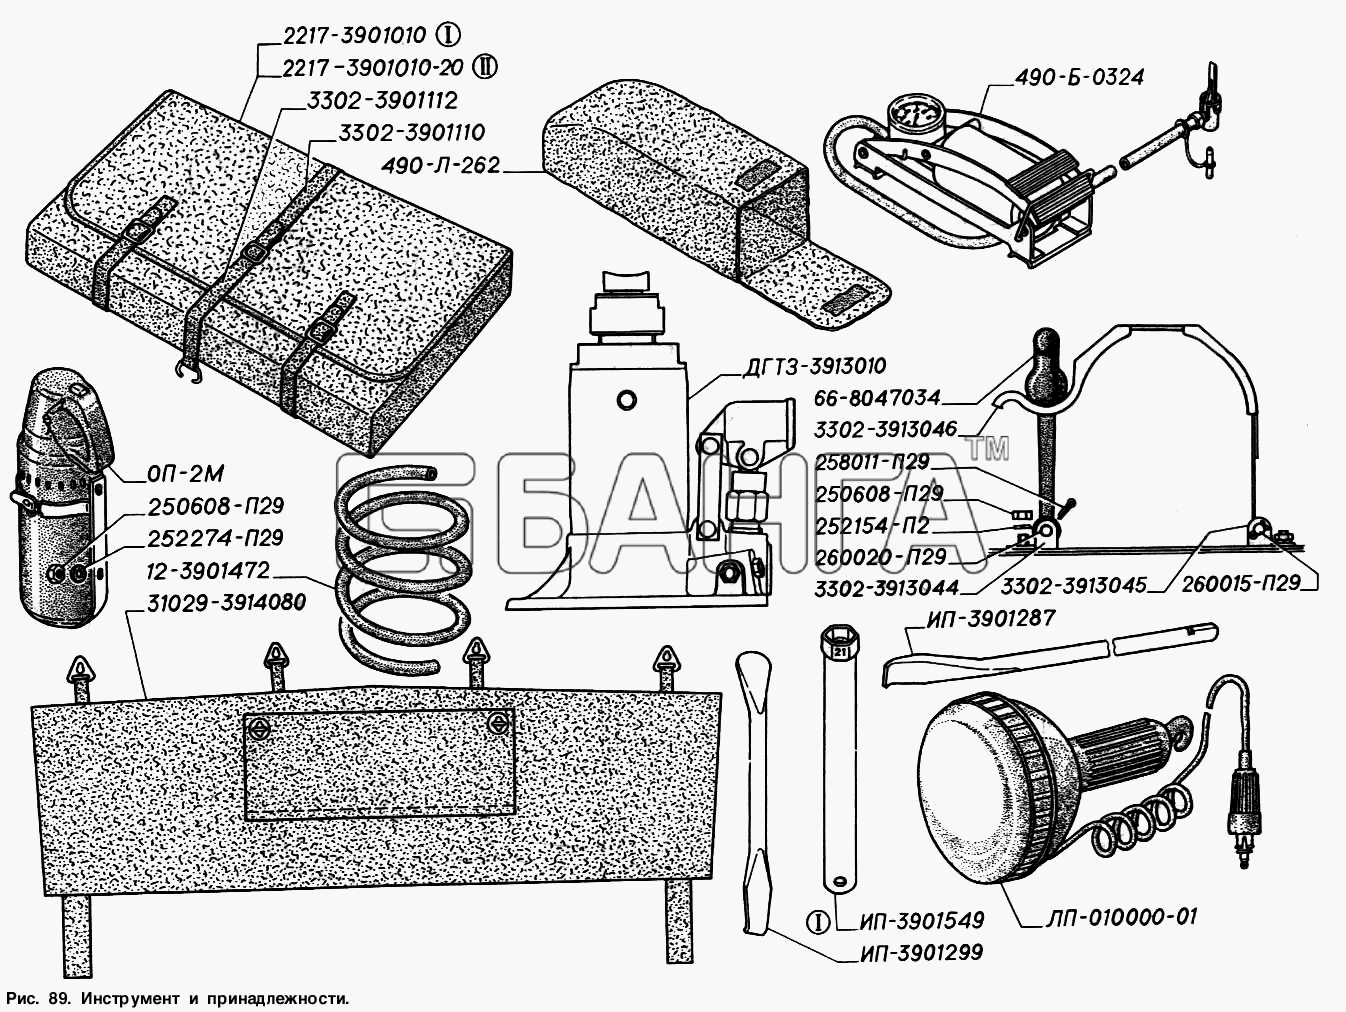 ГАЗ ГАЗ-2217 (Соболь) Схема Инструмент и принадлежности-170 banga.ua